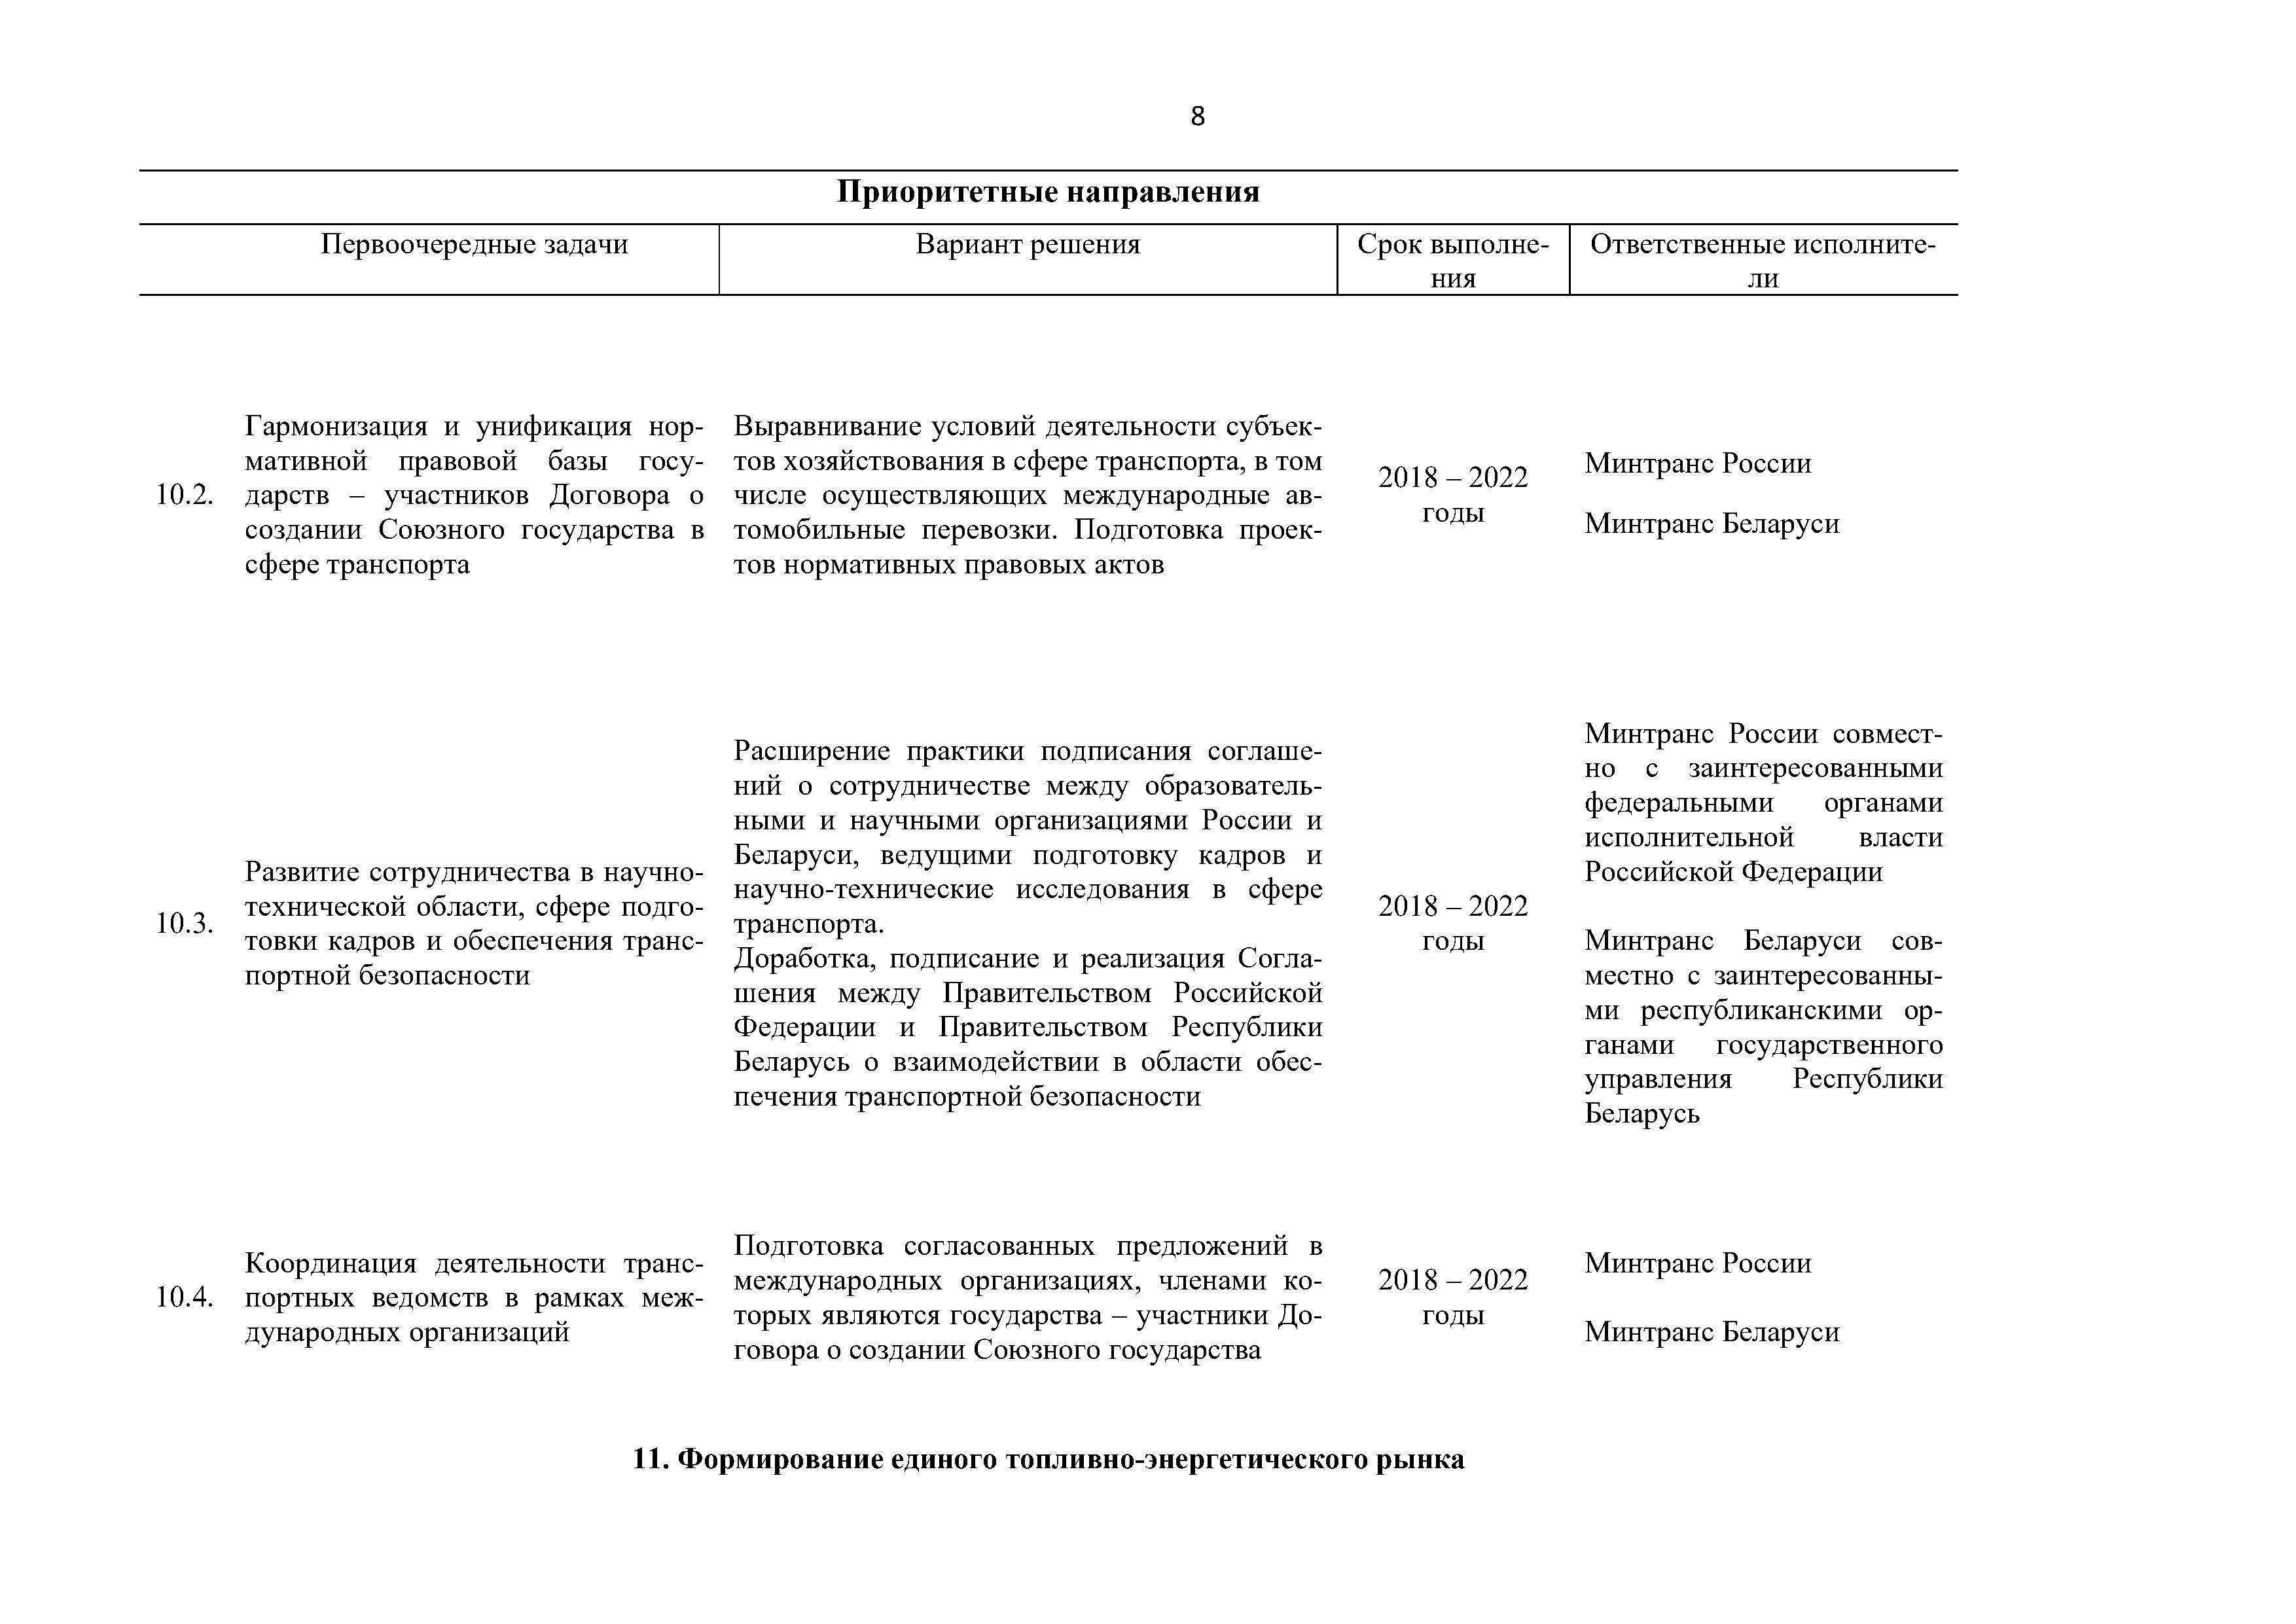 Приоритетные направления и первоочередные задачи развития Союзного государства на 2018 – 2022 г. (Страница 8)